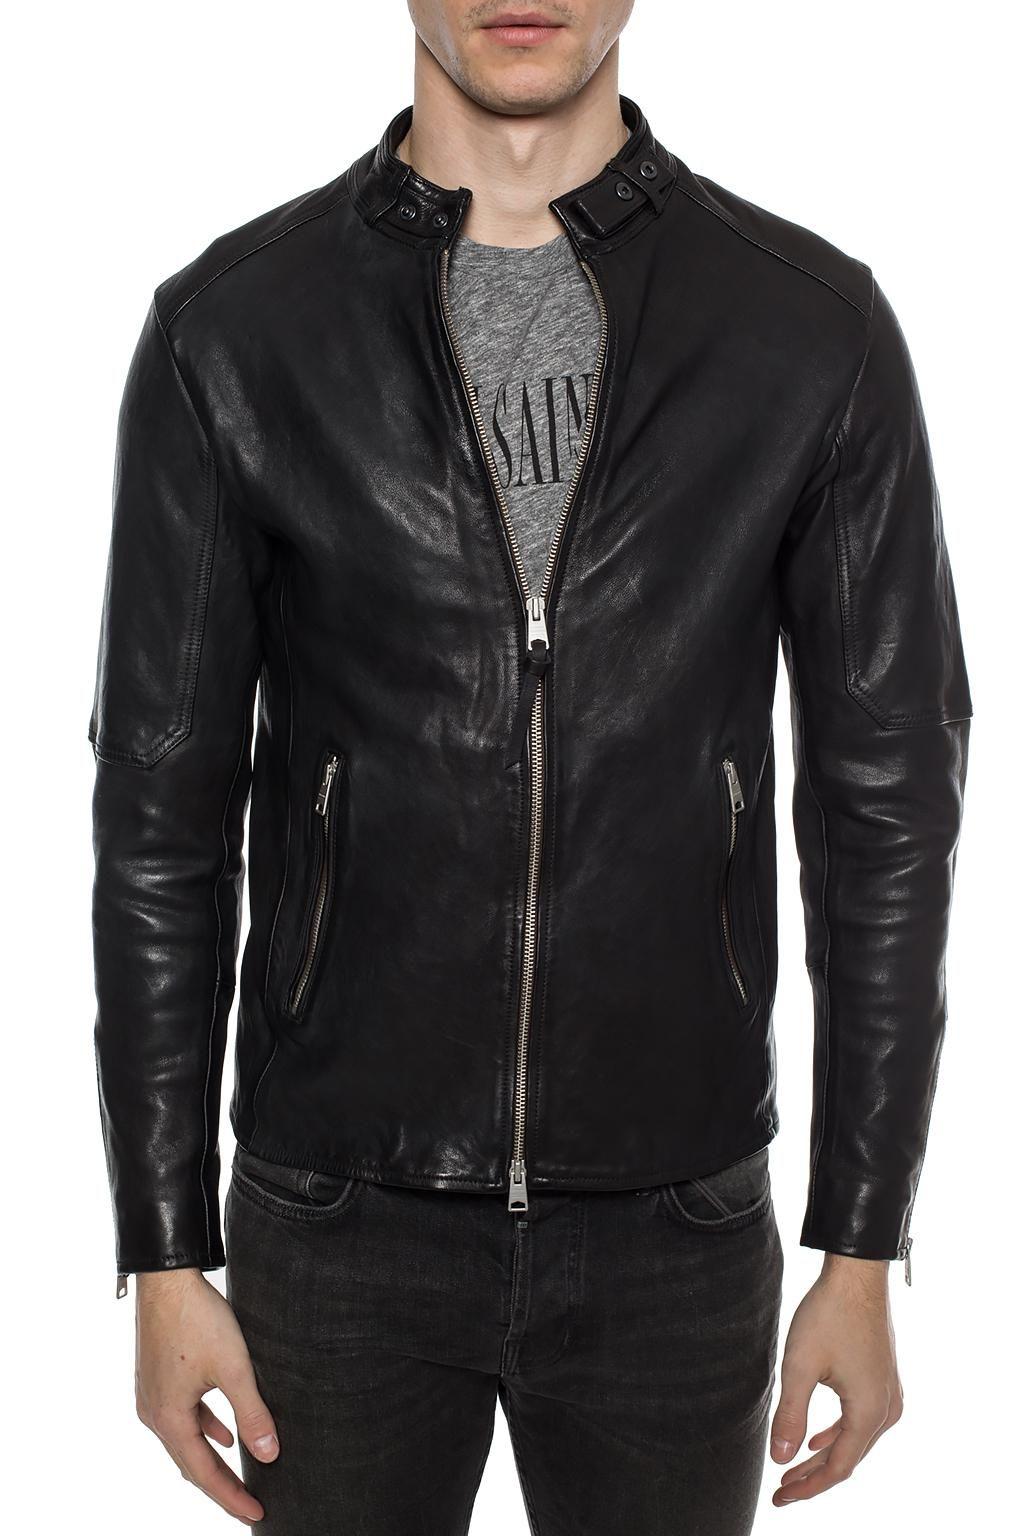 石見銀山 ALLSAINTS オールセインツ メンズ ジャケット・ブルゾン アウター AllSaints cora leather jacket in  black - 通販 - www.flow-tech.ai